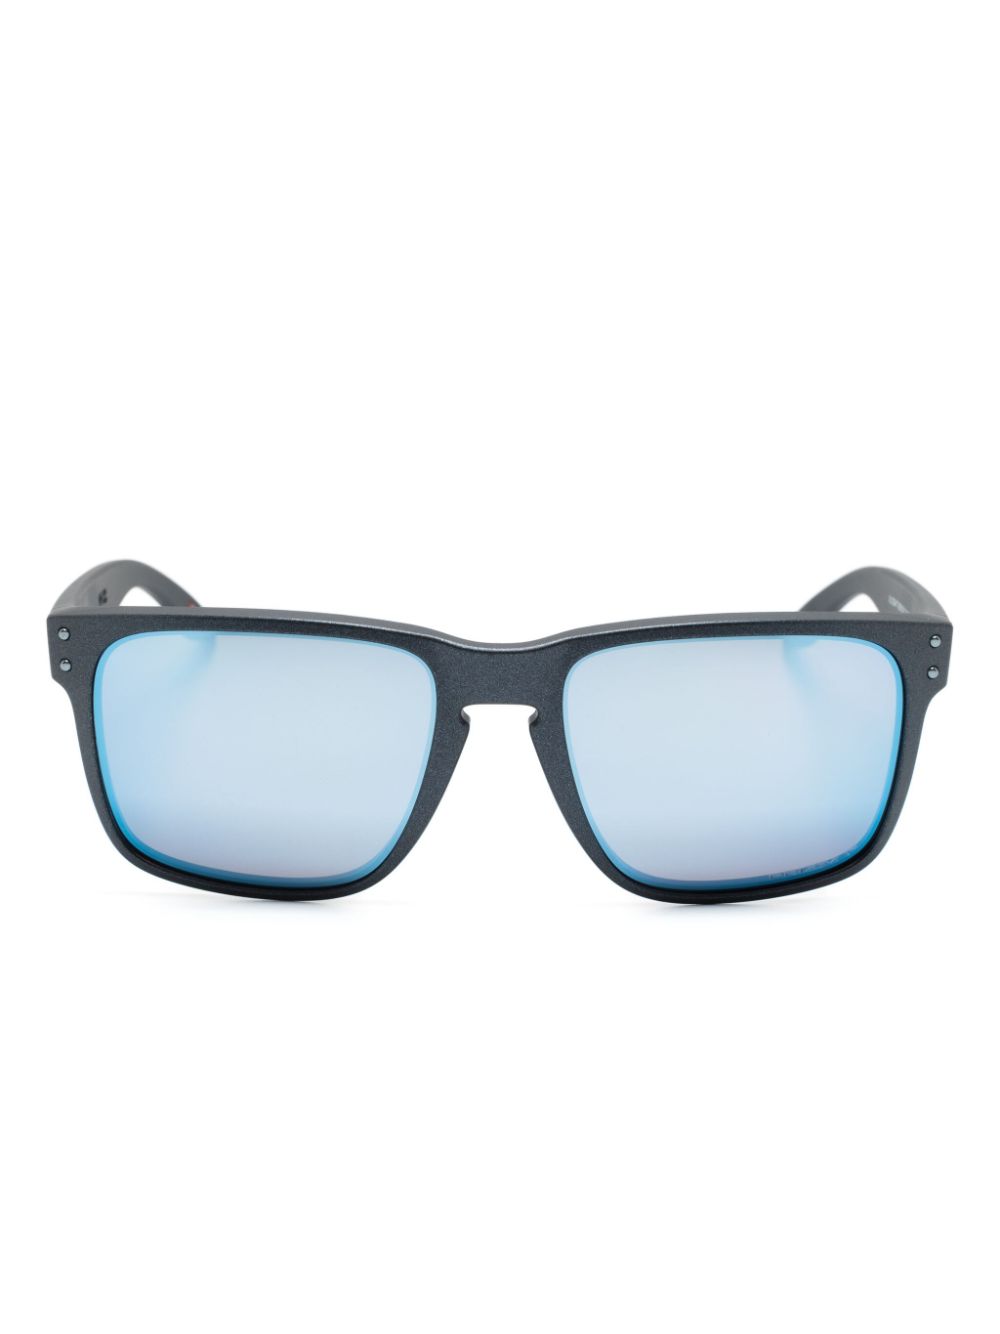 Holbrook XL square-frame sunglasses<BR/><BR/><BR/>